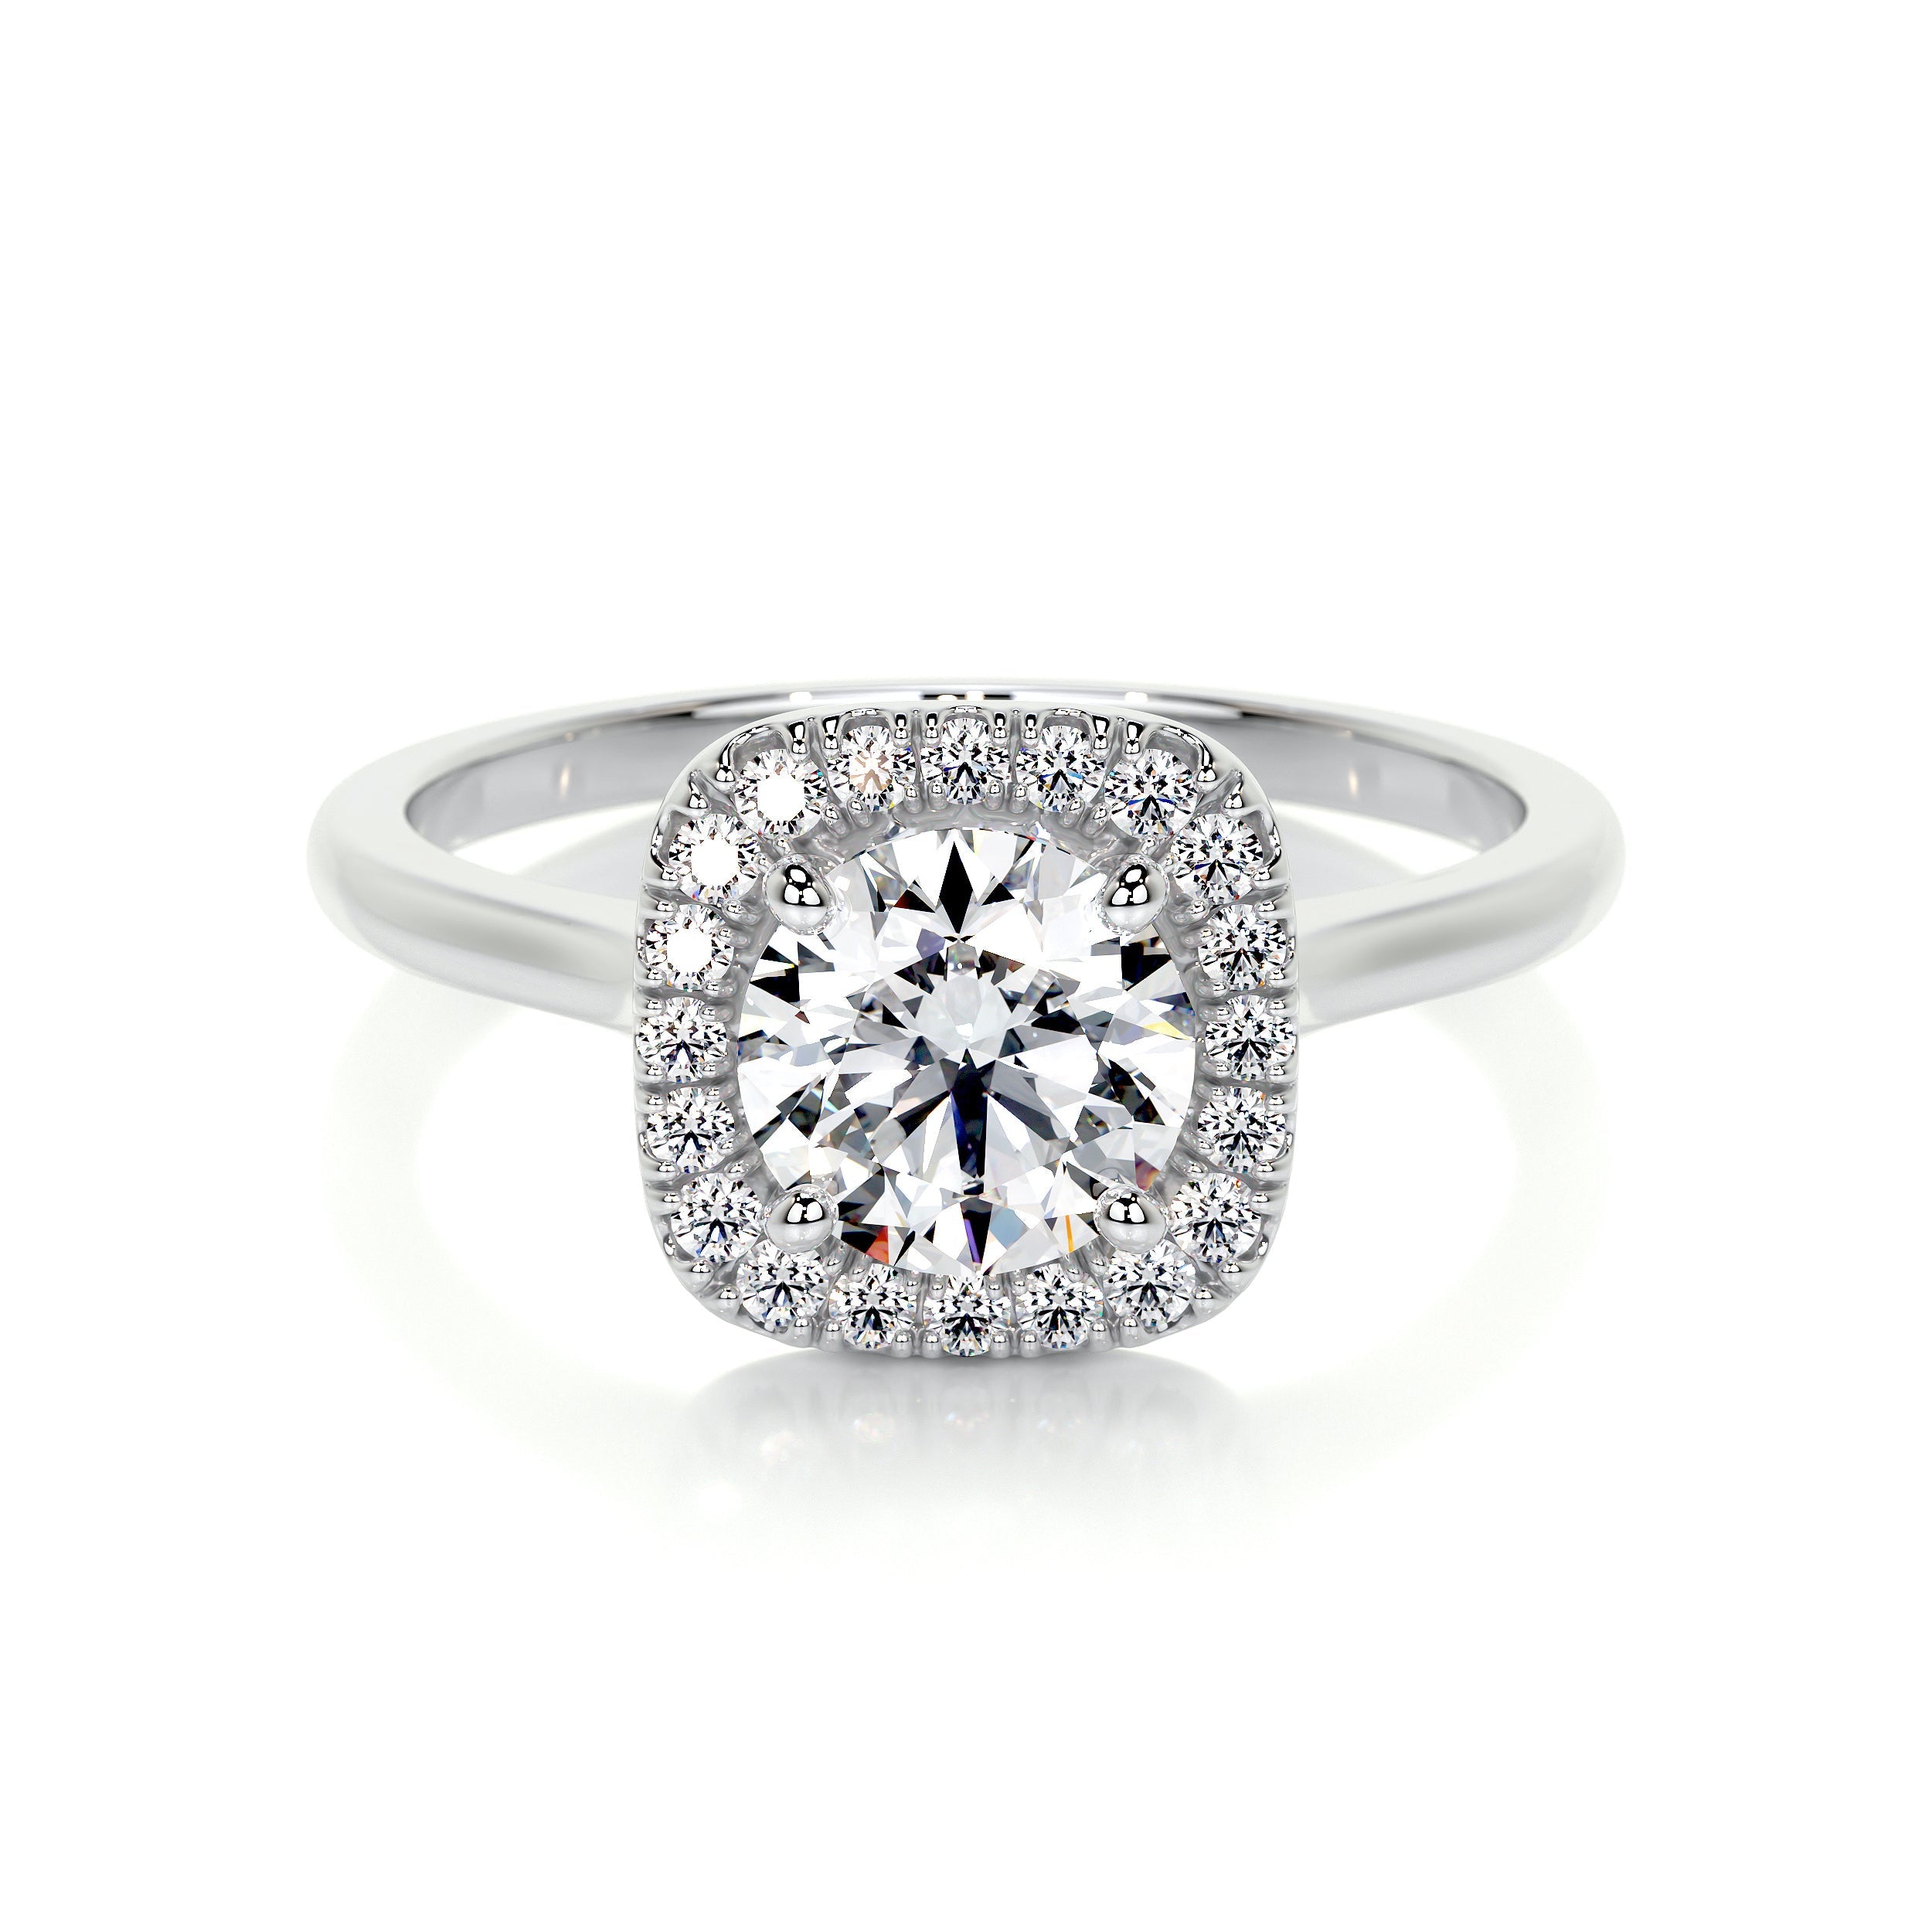 Claudia Lab Grown Diamond Ring   (1.15 Carat) -14K White Gold